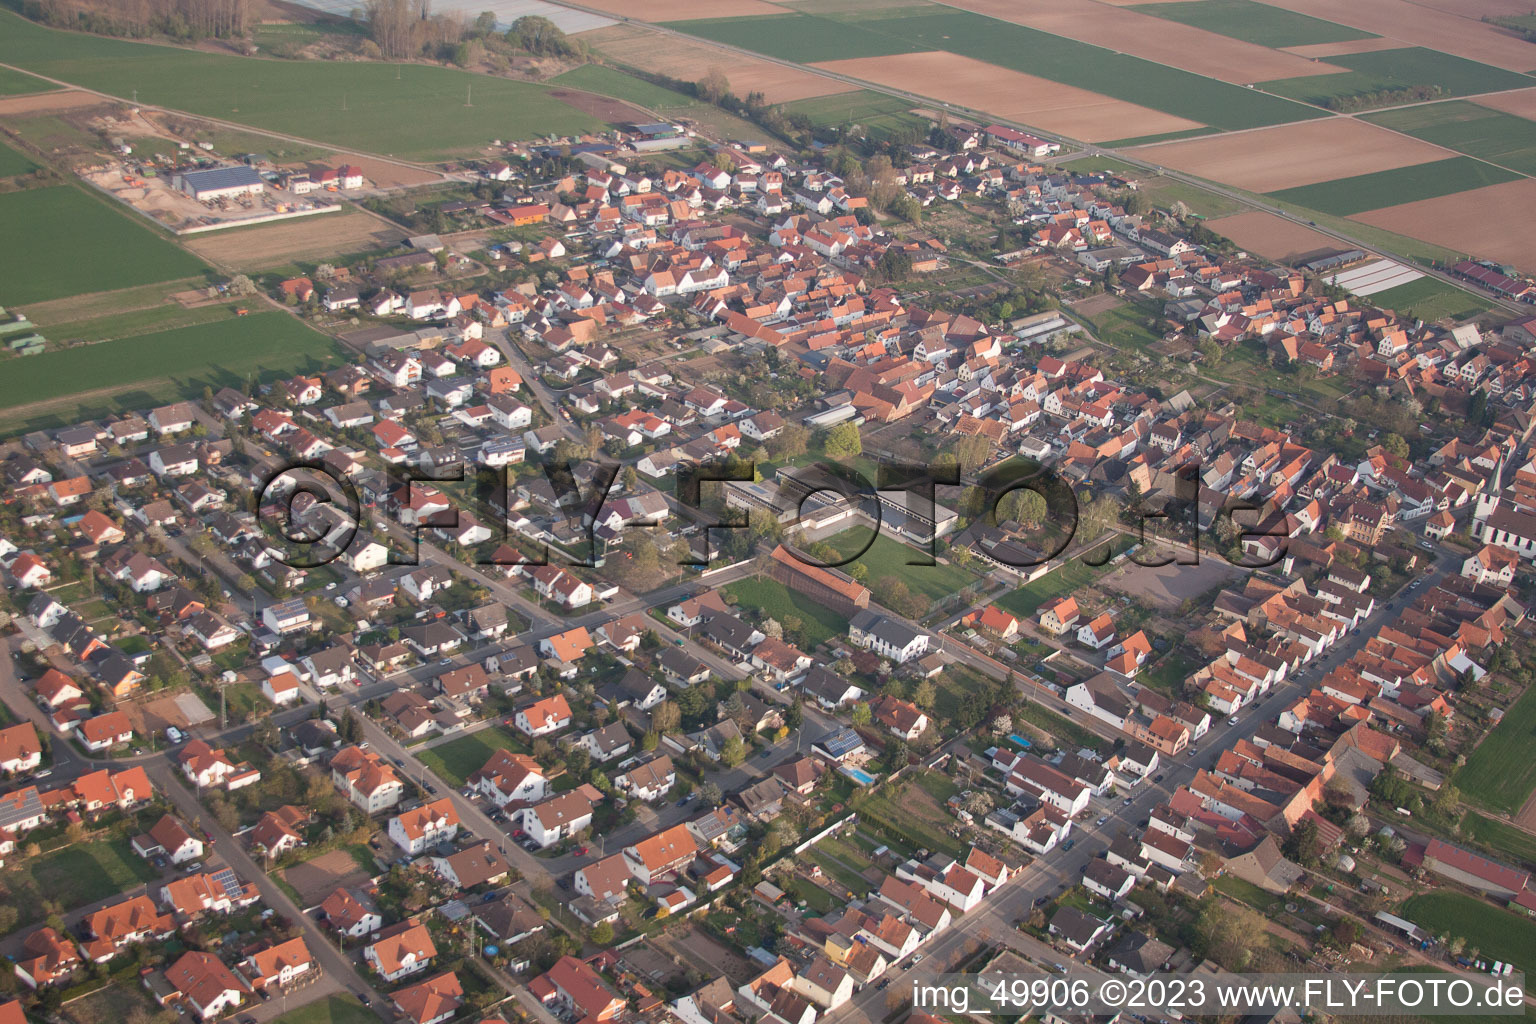 Ottersheim bei Landau im Bundesland Rheinland-Pfalz, Deutschland von der Drohne aus gesehen